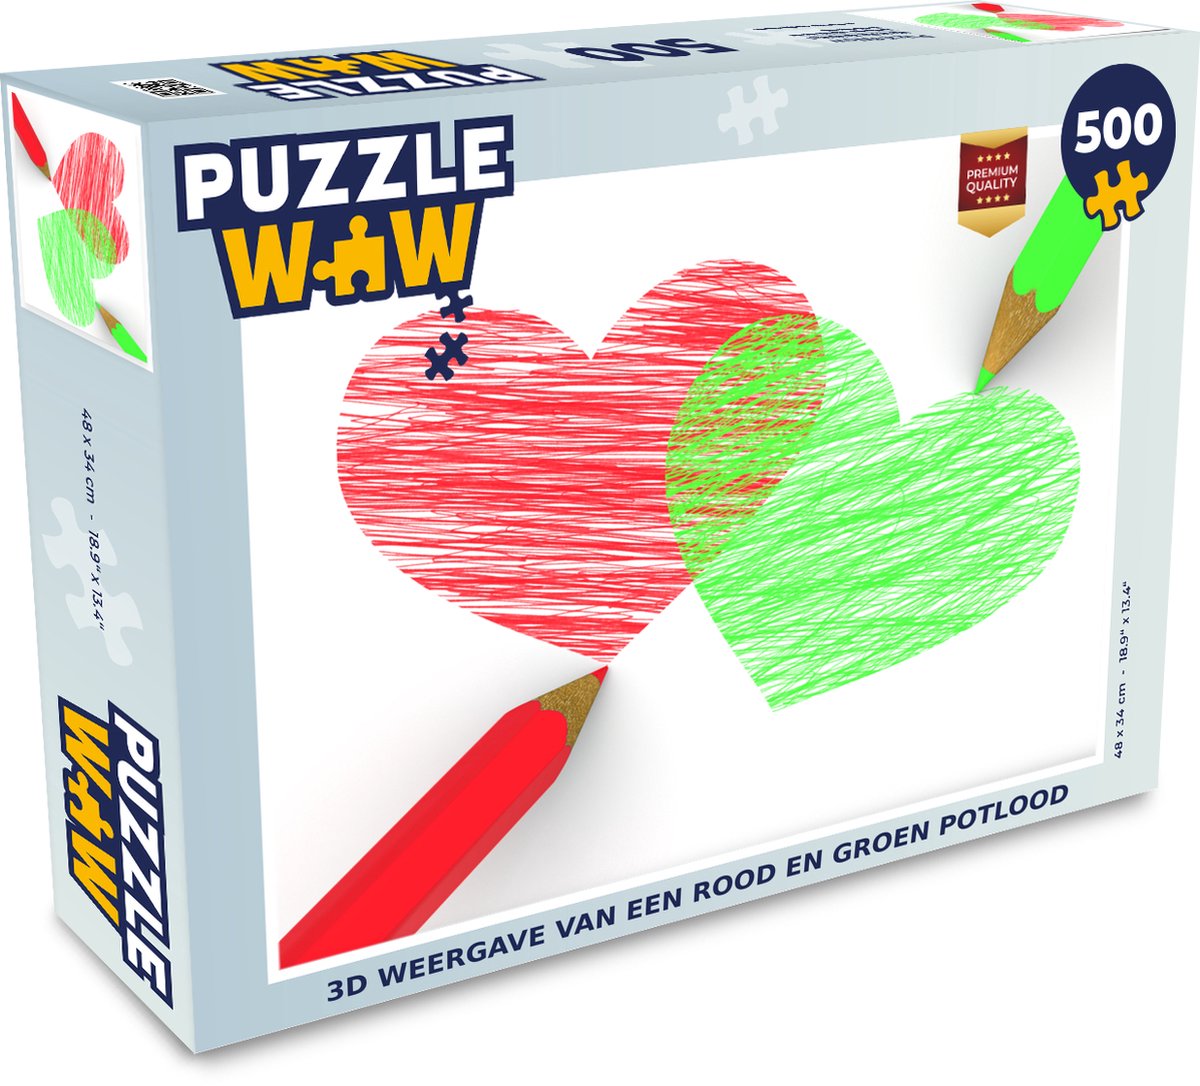 Afbeelding van product Puzzel 500 stukjes 3d potloden - 3d weergave van een rood en groen potlood - PuzzleWow heeft +100000 puzzels